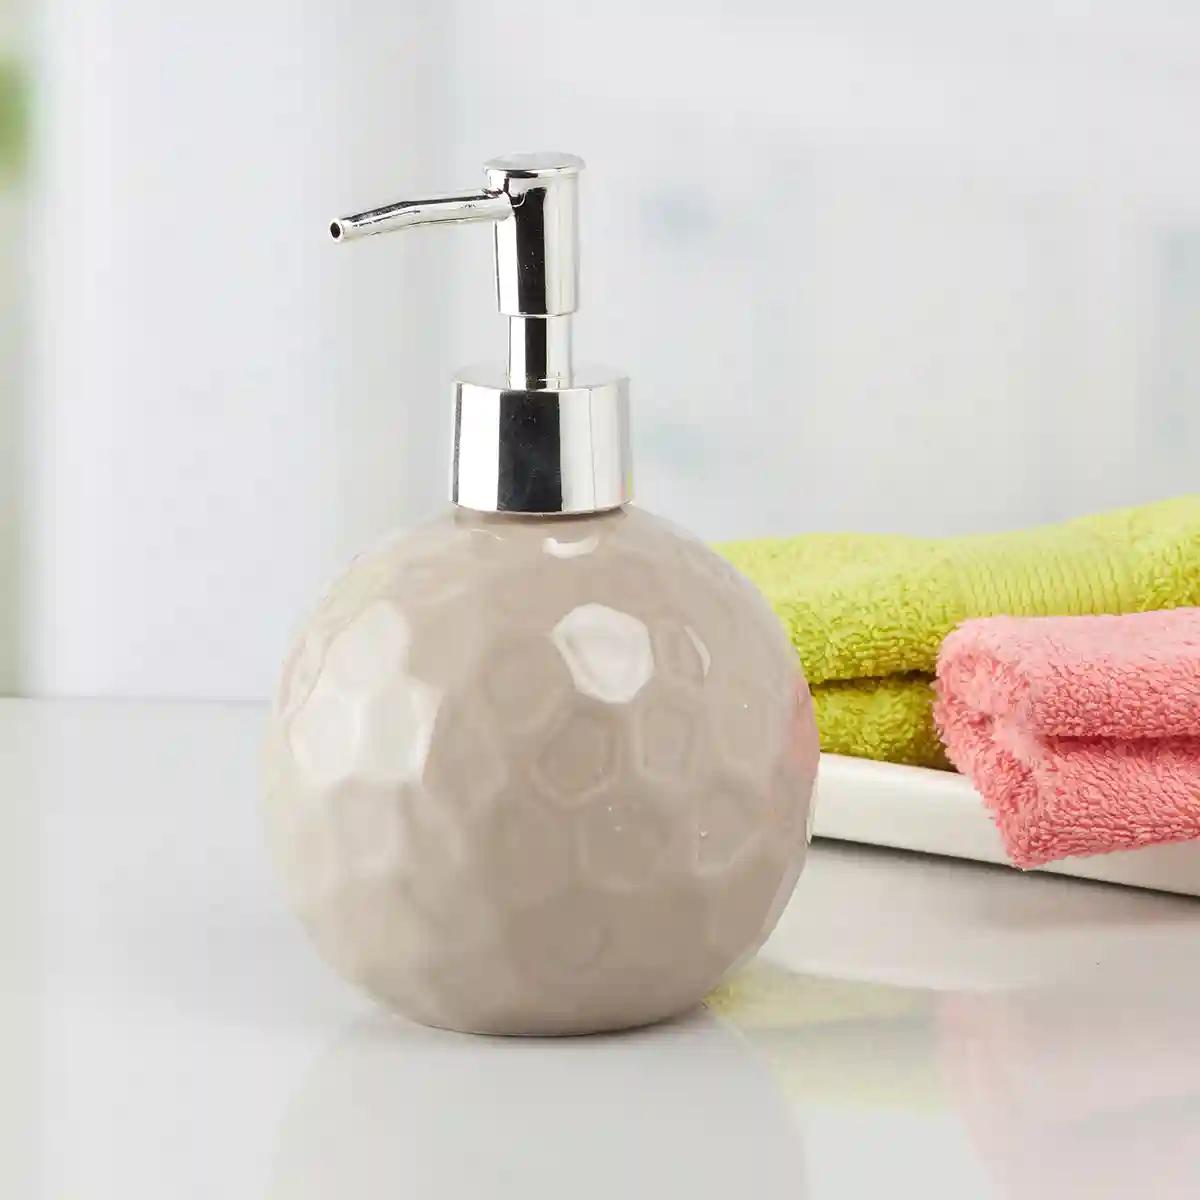 Kookee Ceramic Soap Dispenser for Bathroom handwash, refillable pump bottle for Kitchen hand wash basin, Set of 2 - Brown (8008)